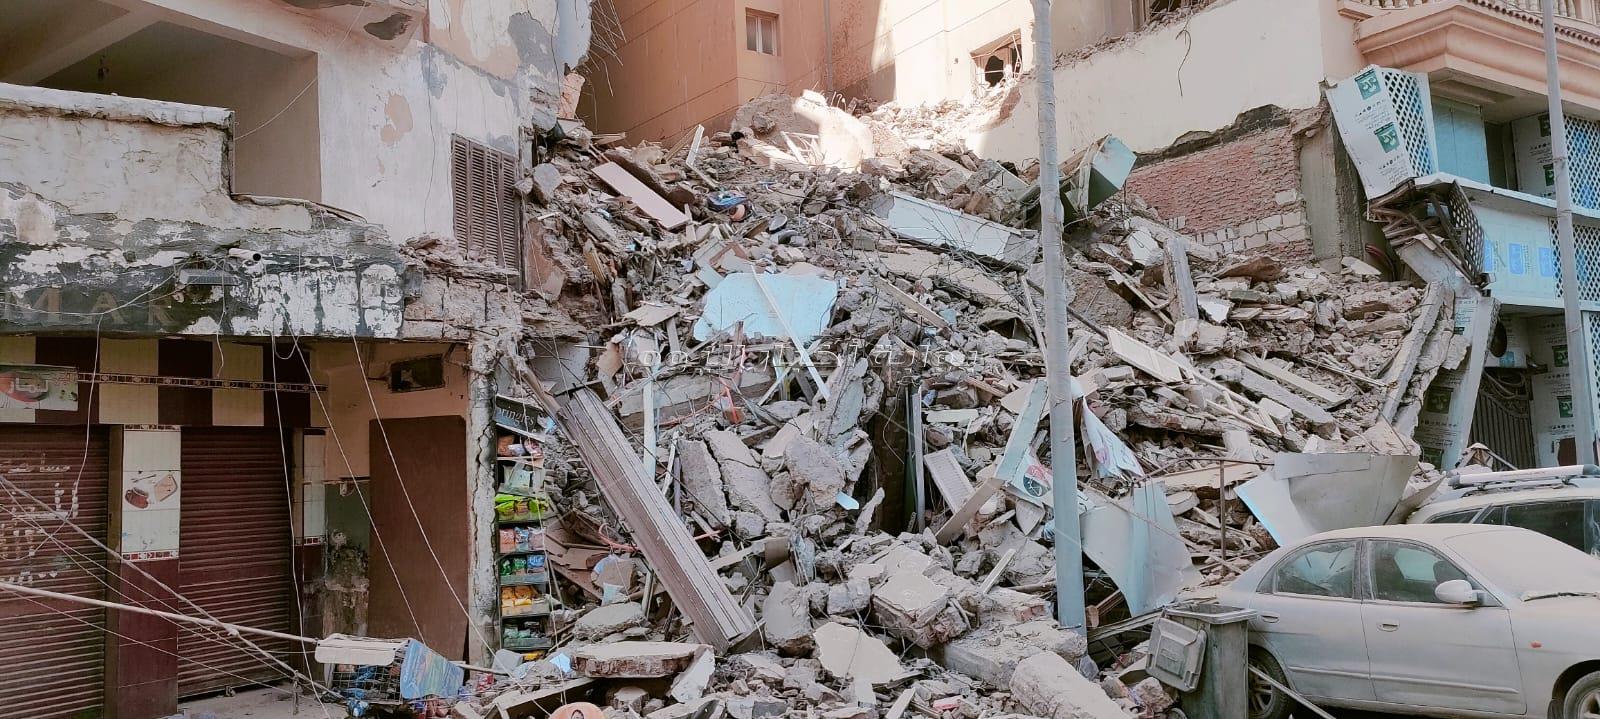 انهيار عقار من 13 طابق بالإسكندرية والحماية المدنية تكافح لإنقاذ السكان